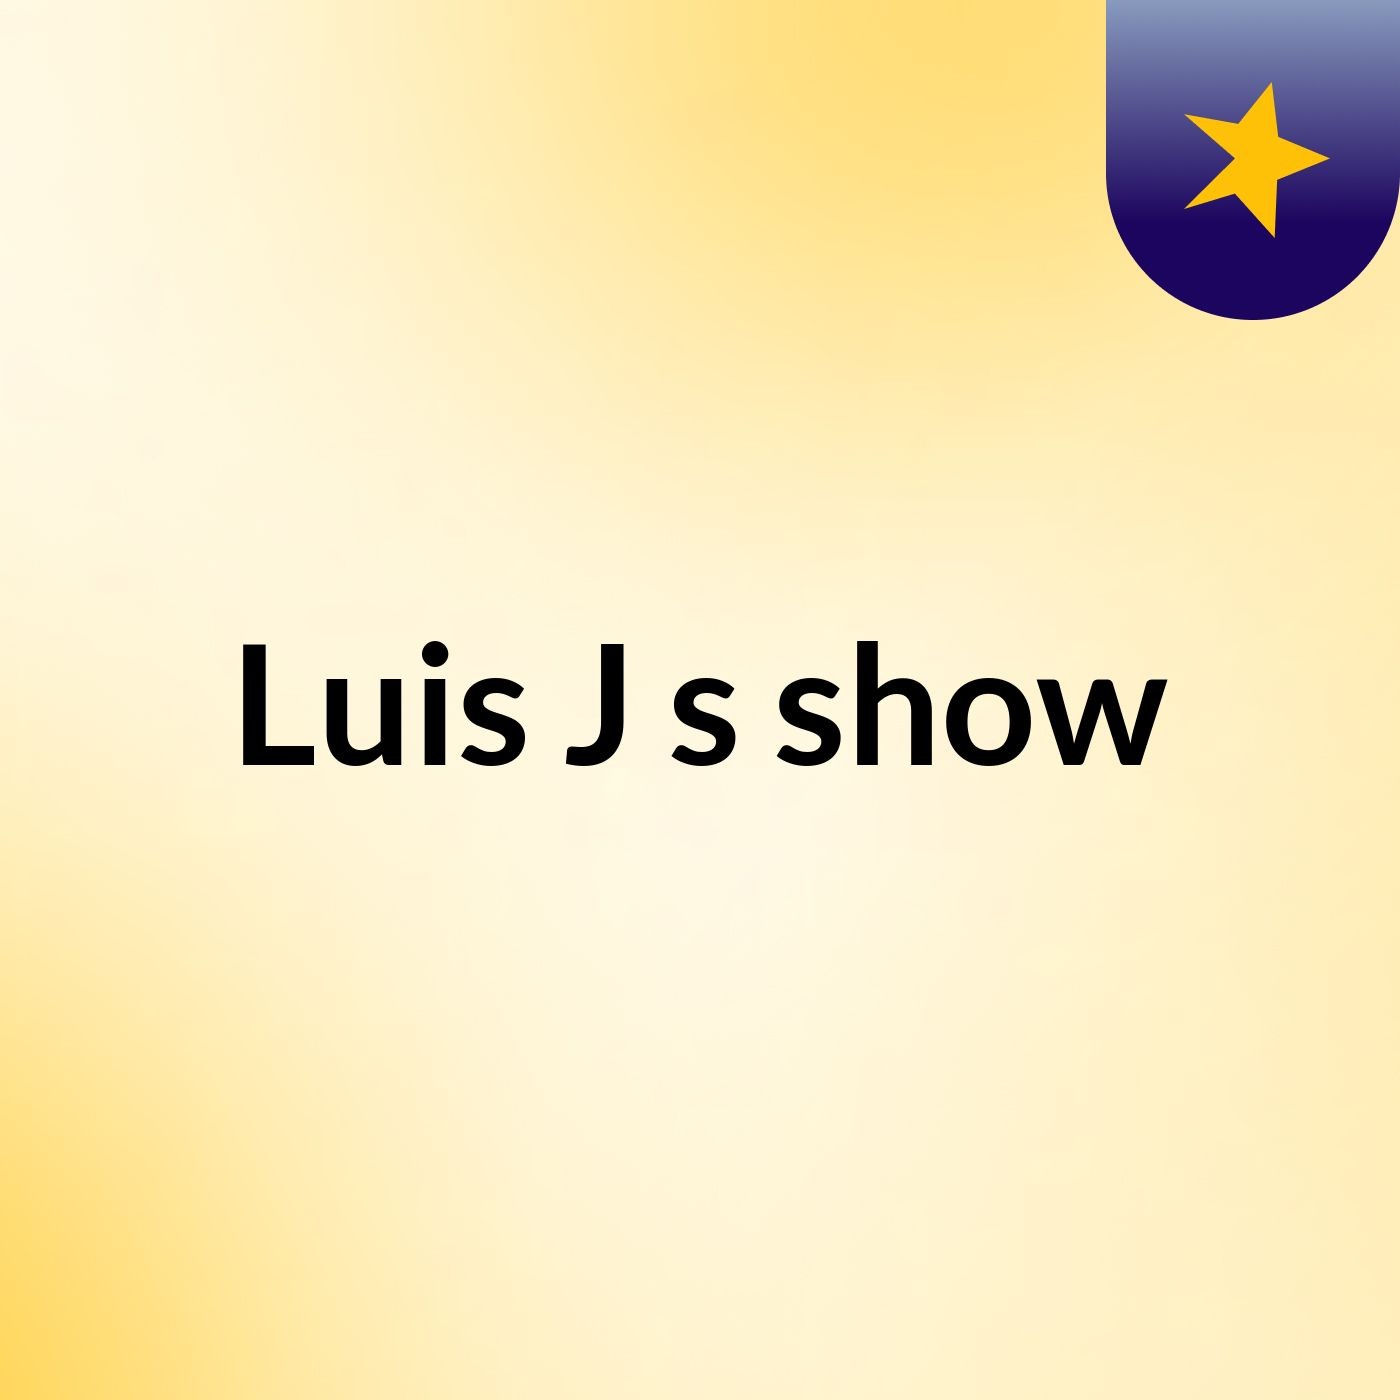 Luis J's show